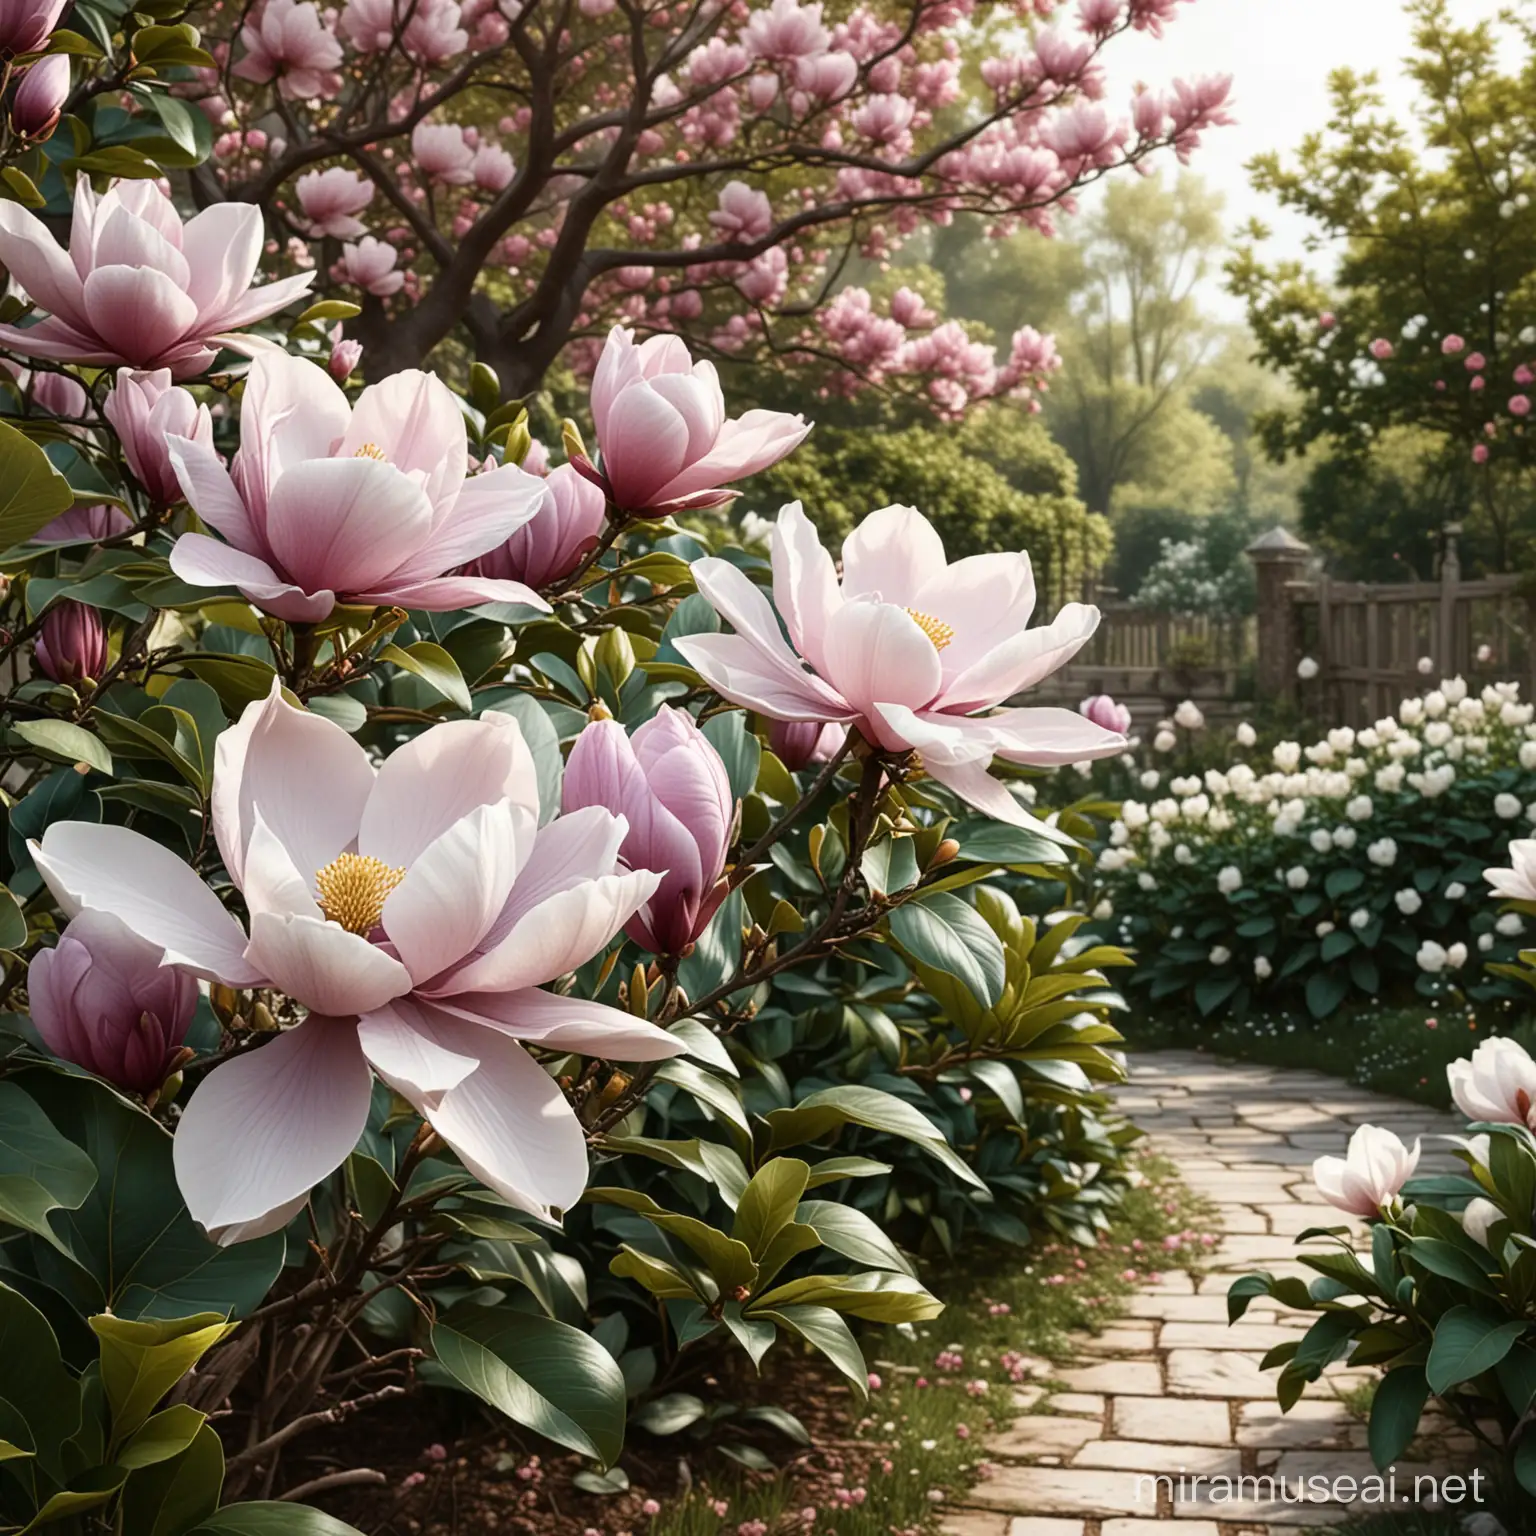 realistyczna grafika z magnoliami w ogrodzie